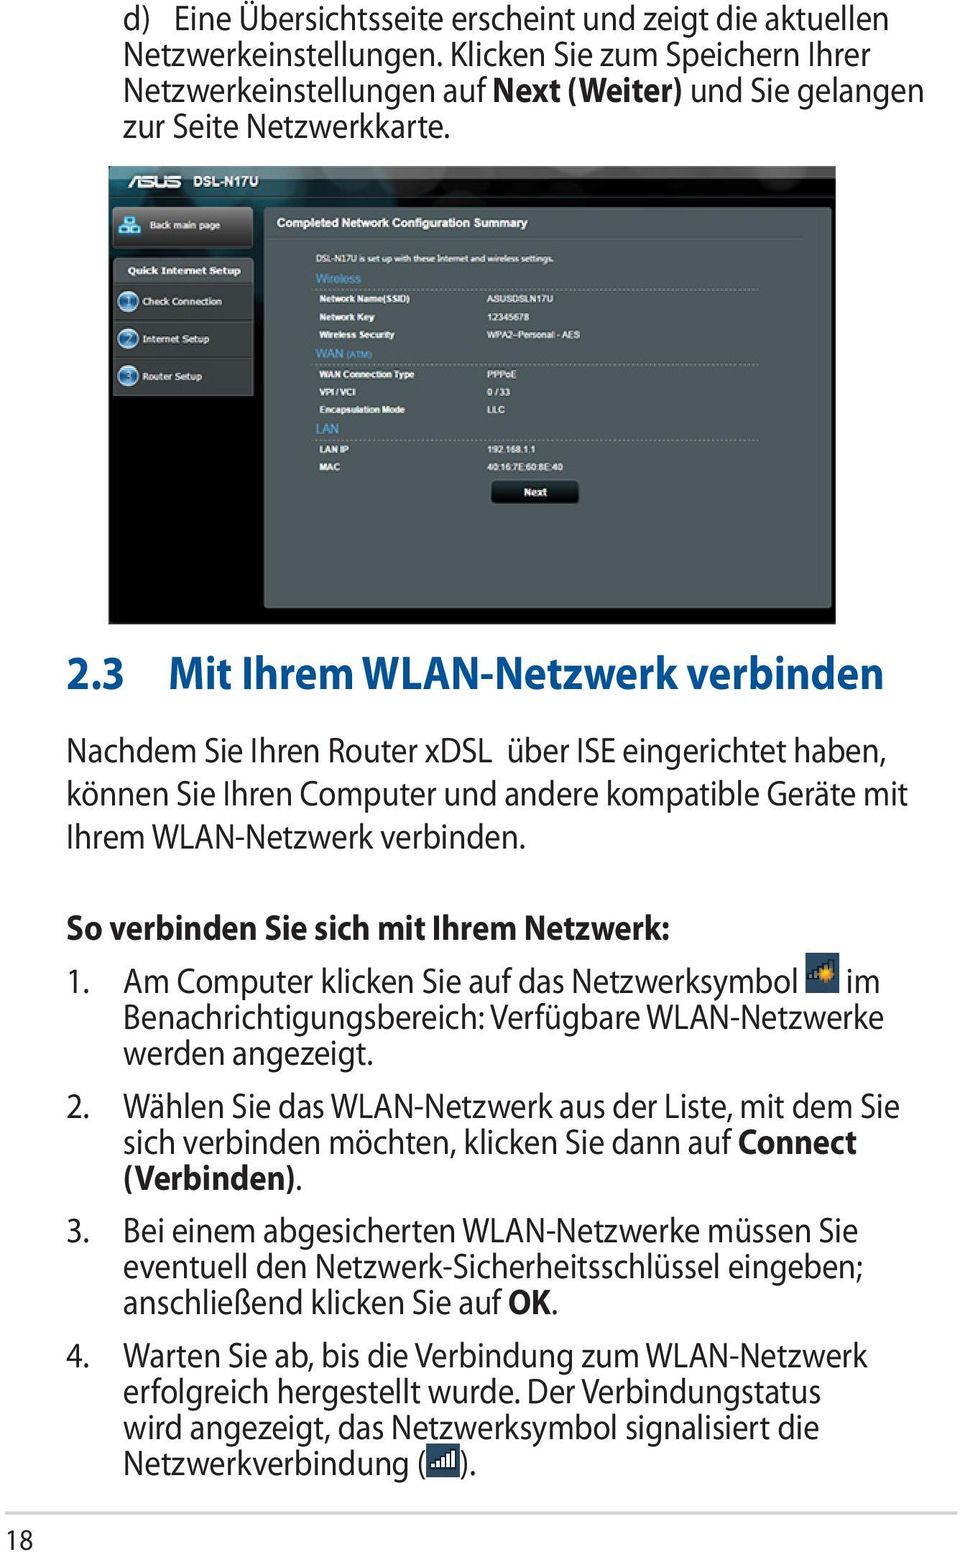 So verbinden Sie sich mit Ihrem Netzwerk: 1. Am Computer klicken Sie auf das Netzwerksymbol im Benachrichtigungsbereich: Verfügbare WLAN-Netzwerke werden angezeigt. 2.